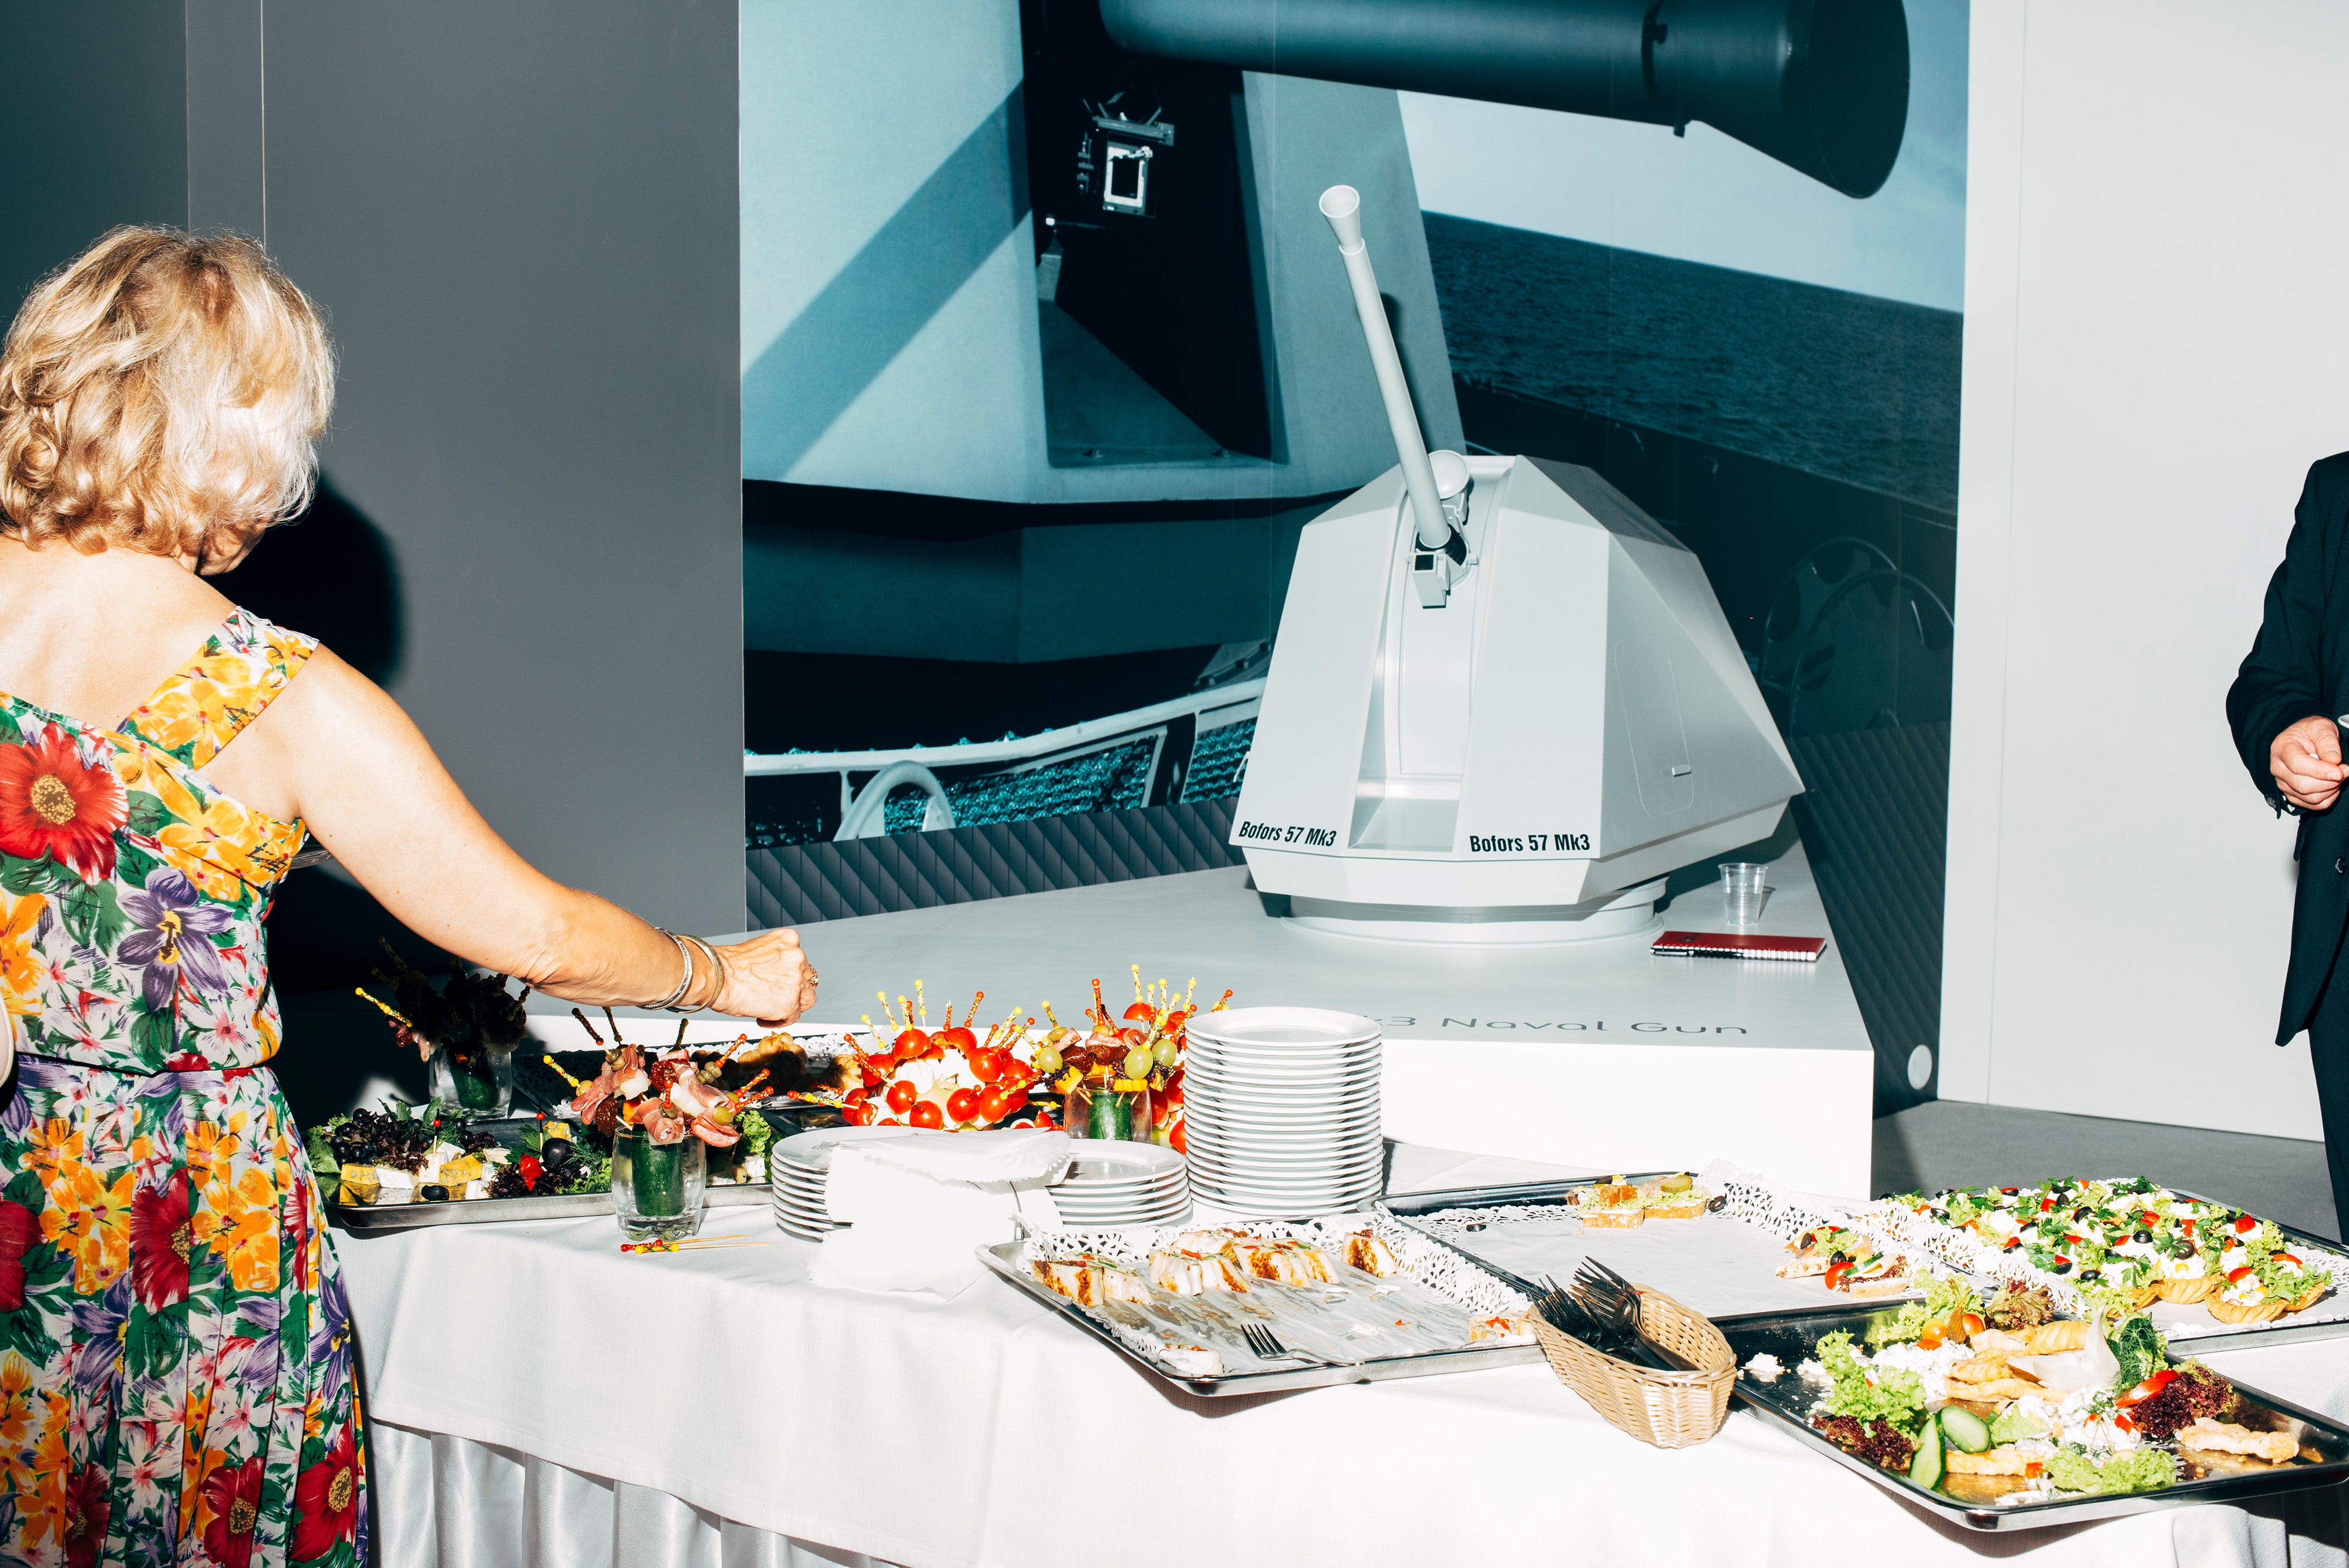 Modell eines schwedischen Marinegeschützes Bofors 57 Mk3 hinter einem Tisch voller Essen auf der Verteidigungsmesse